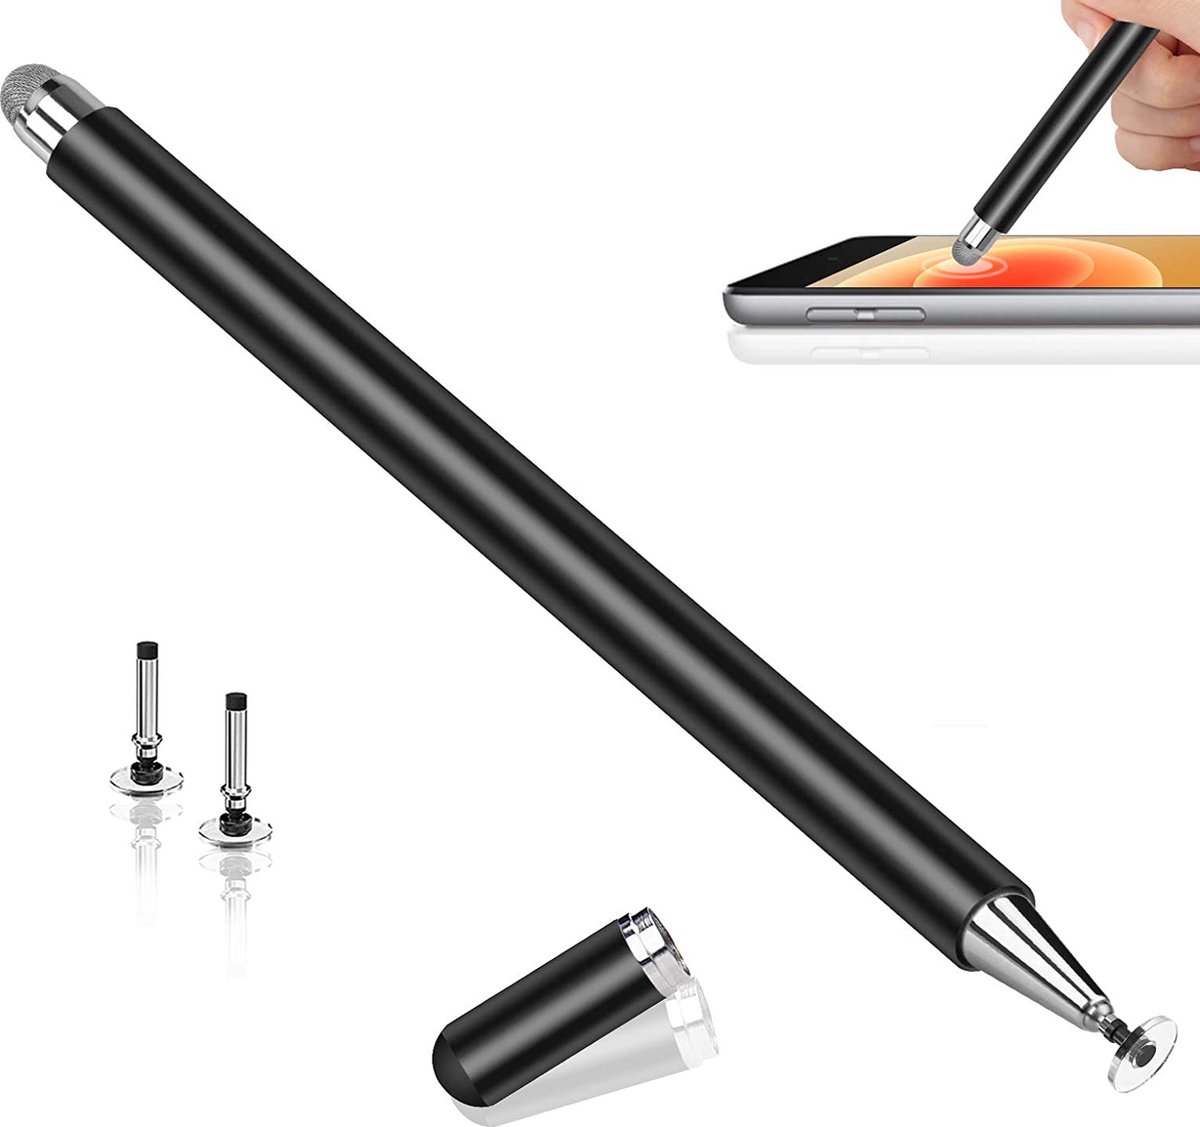 Stylus-pen- Styluspennen voor aanraakschermen-Capacitieve iPad potlood -met hoge gevoeligheid Compatibel -met iPad-tablet- iPhone Android-Smartphone -Samsung Galaxy Note/Tab (2 vervangbare schijftips, magnetische dop)-Zwart